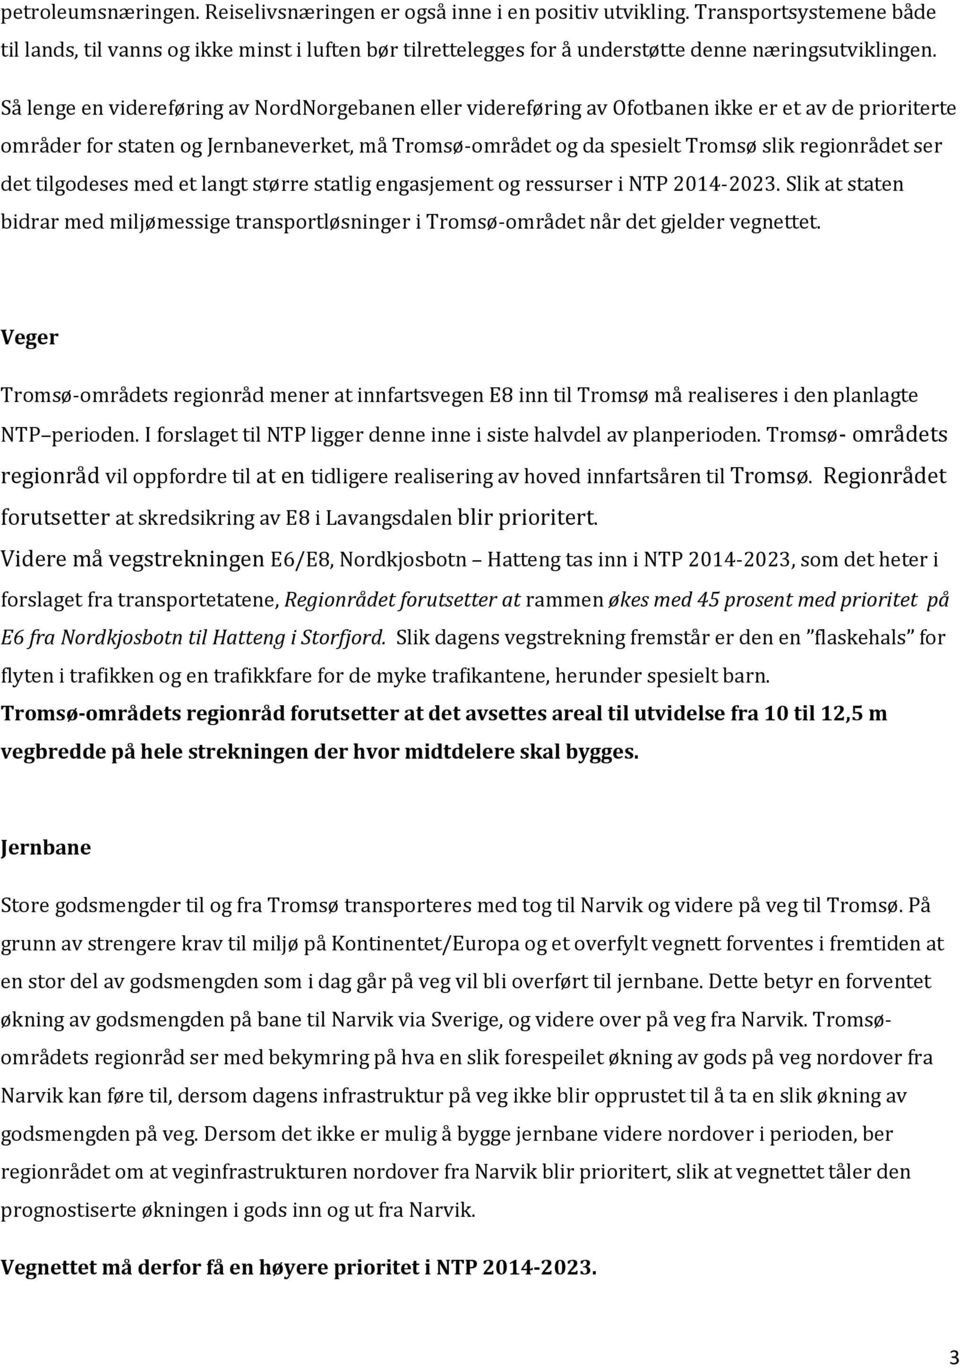 Så lenge en videreføring av NordNorgebanen eller videreføring av Ofotbanen ikke er et av de prioriterte områder for staten og Jernbaneverket, må Tromsø-området og da spesielt Tromsø slik regionrådet